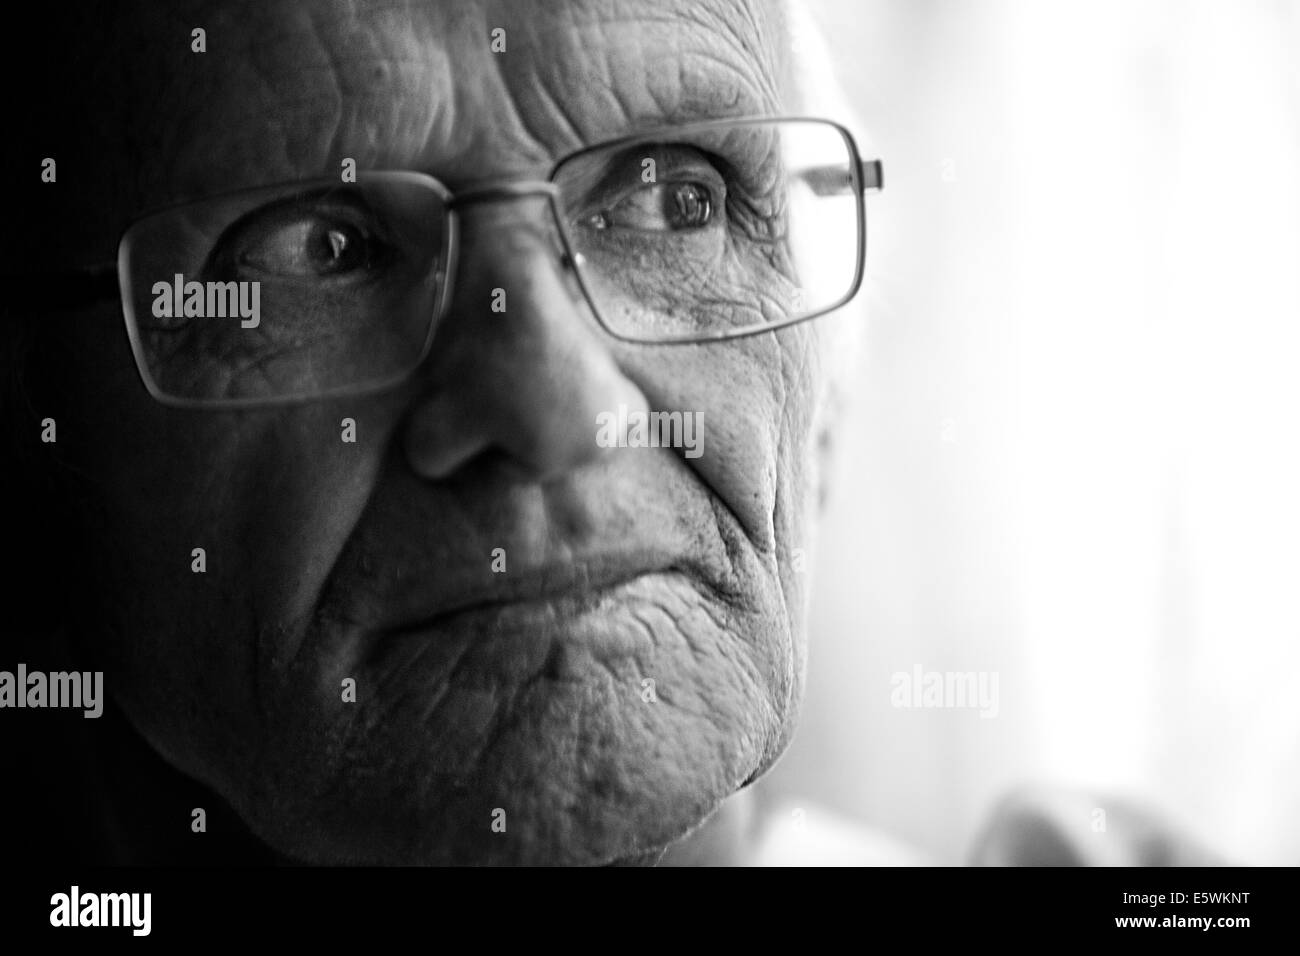 Elderly person indoors Stock Photo